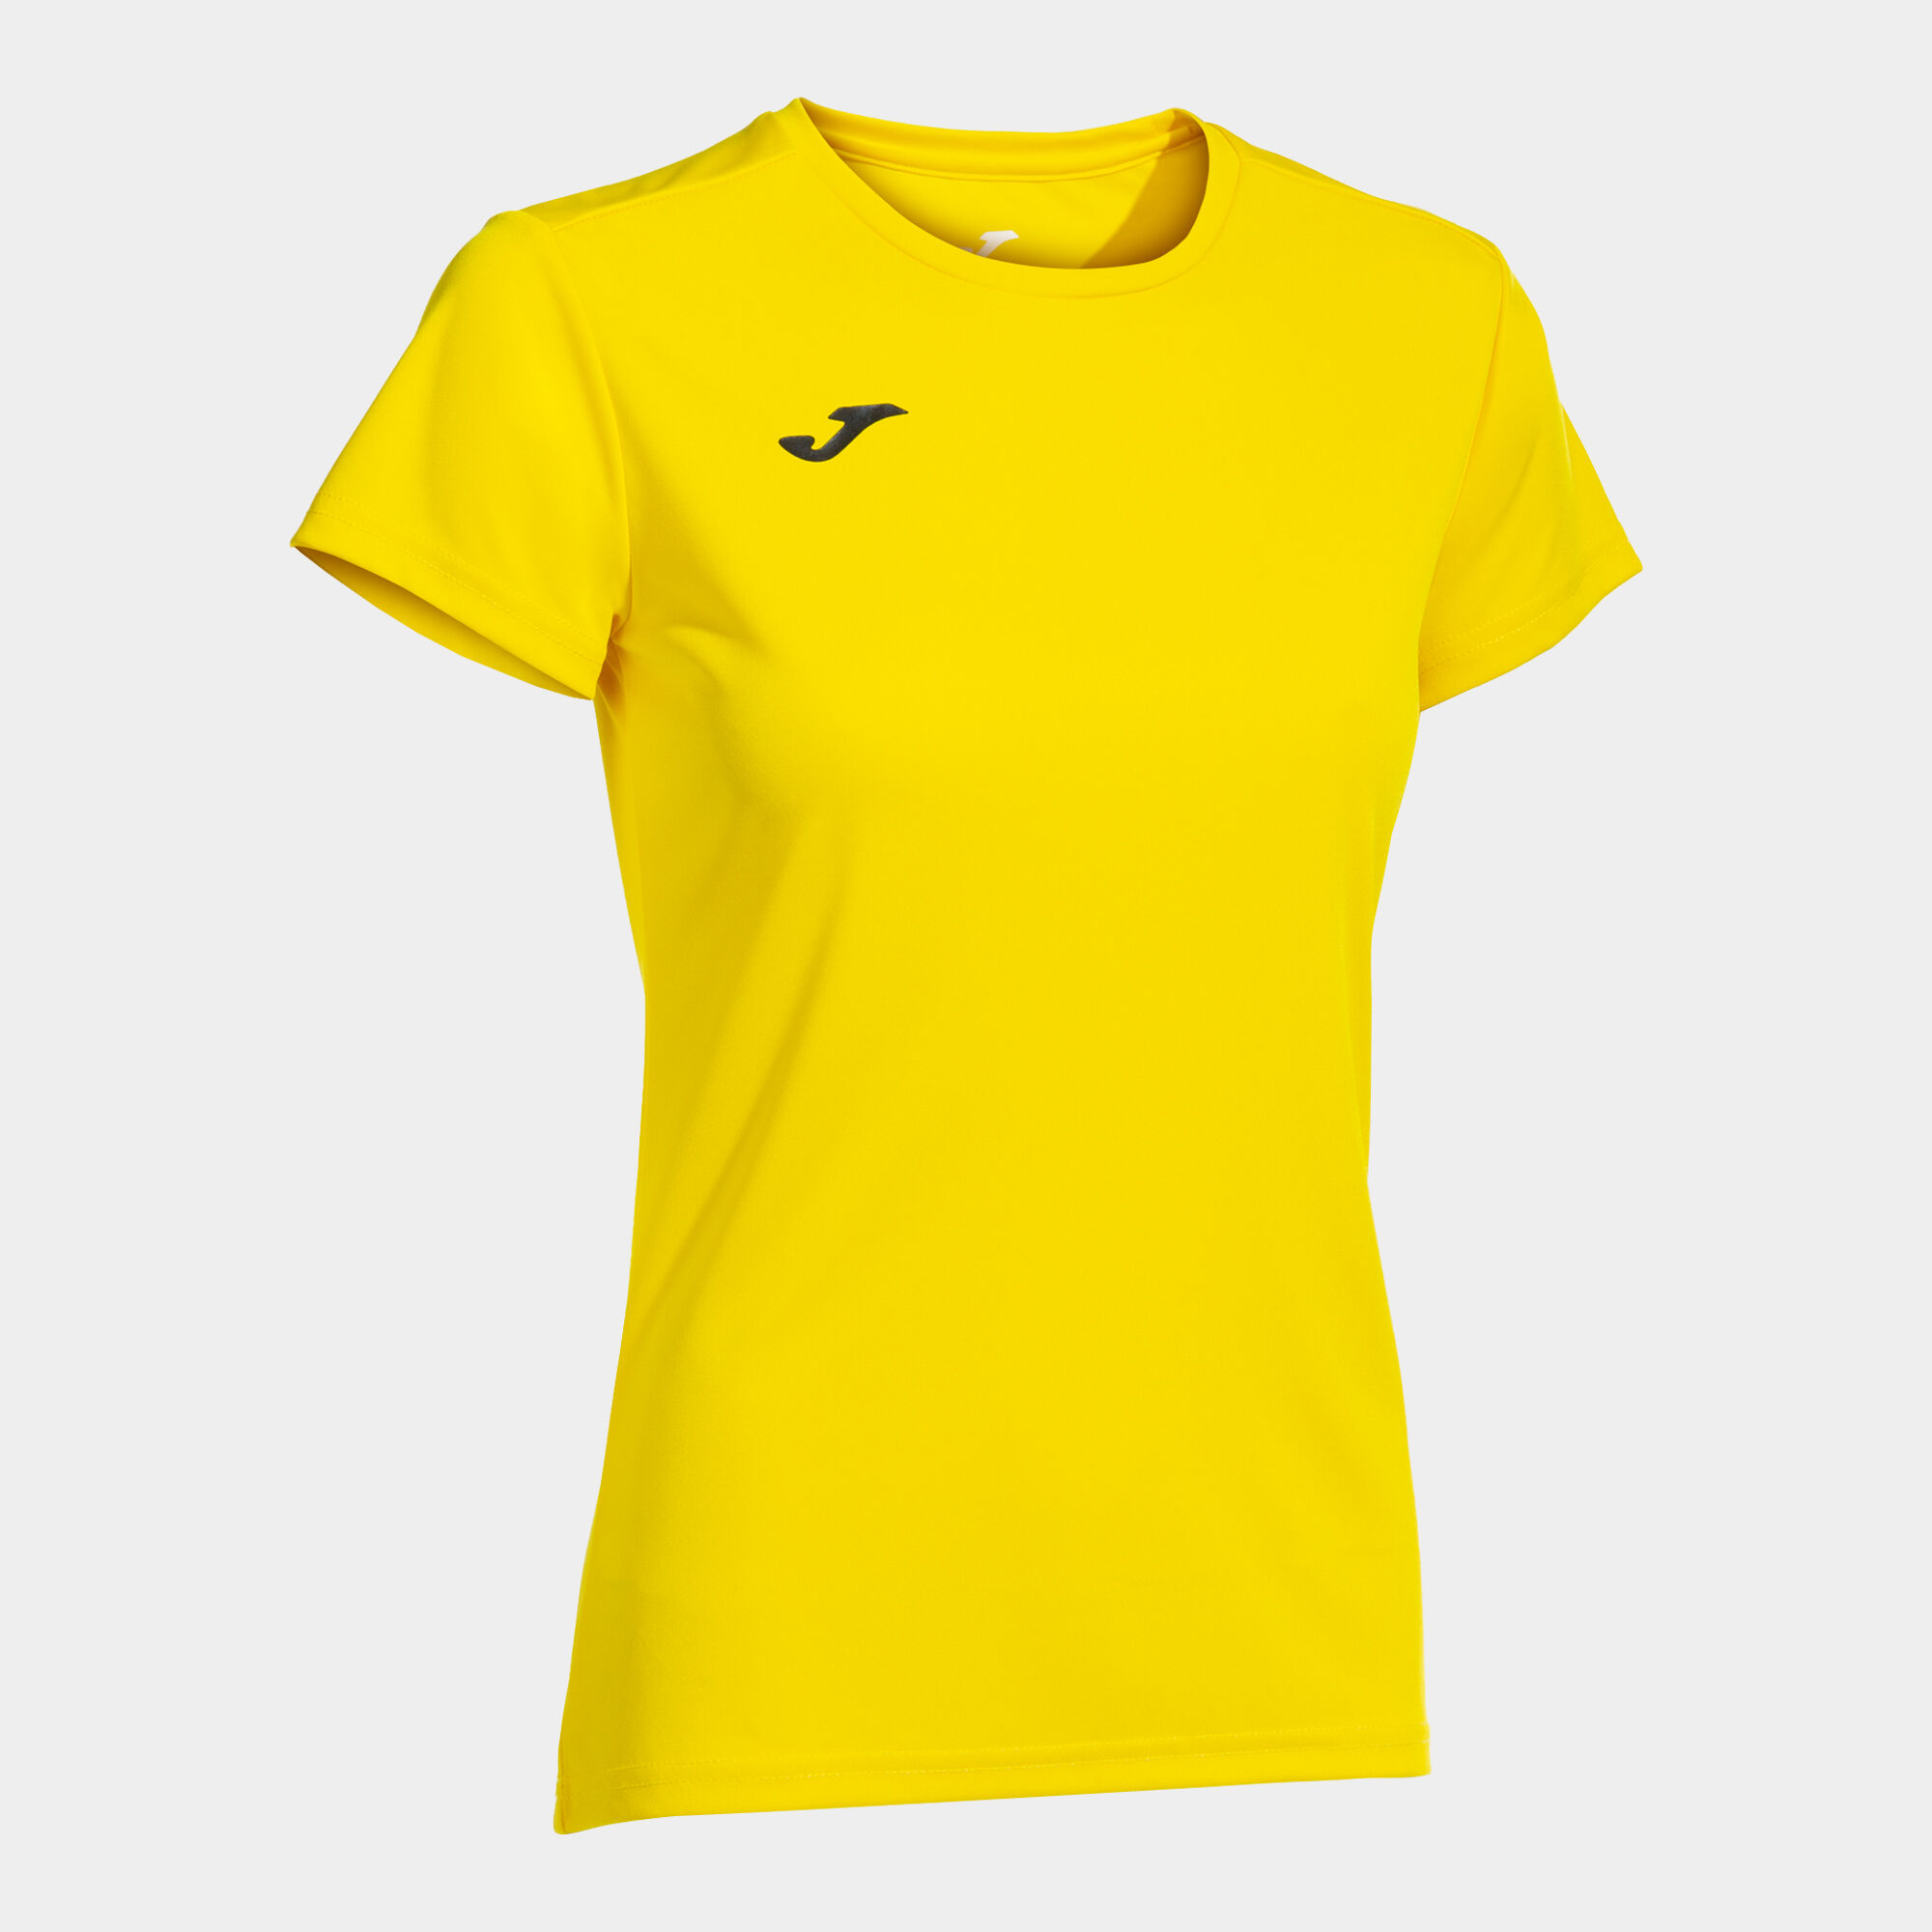 Camiseta manga corta mujer Combi amarillo